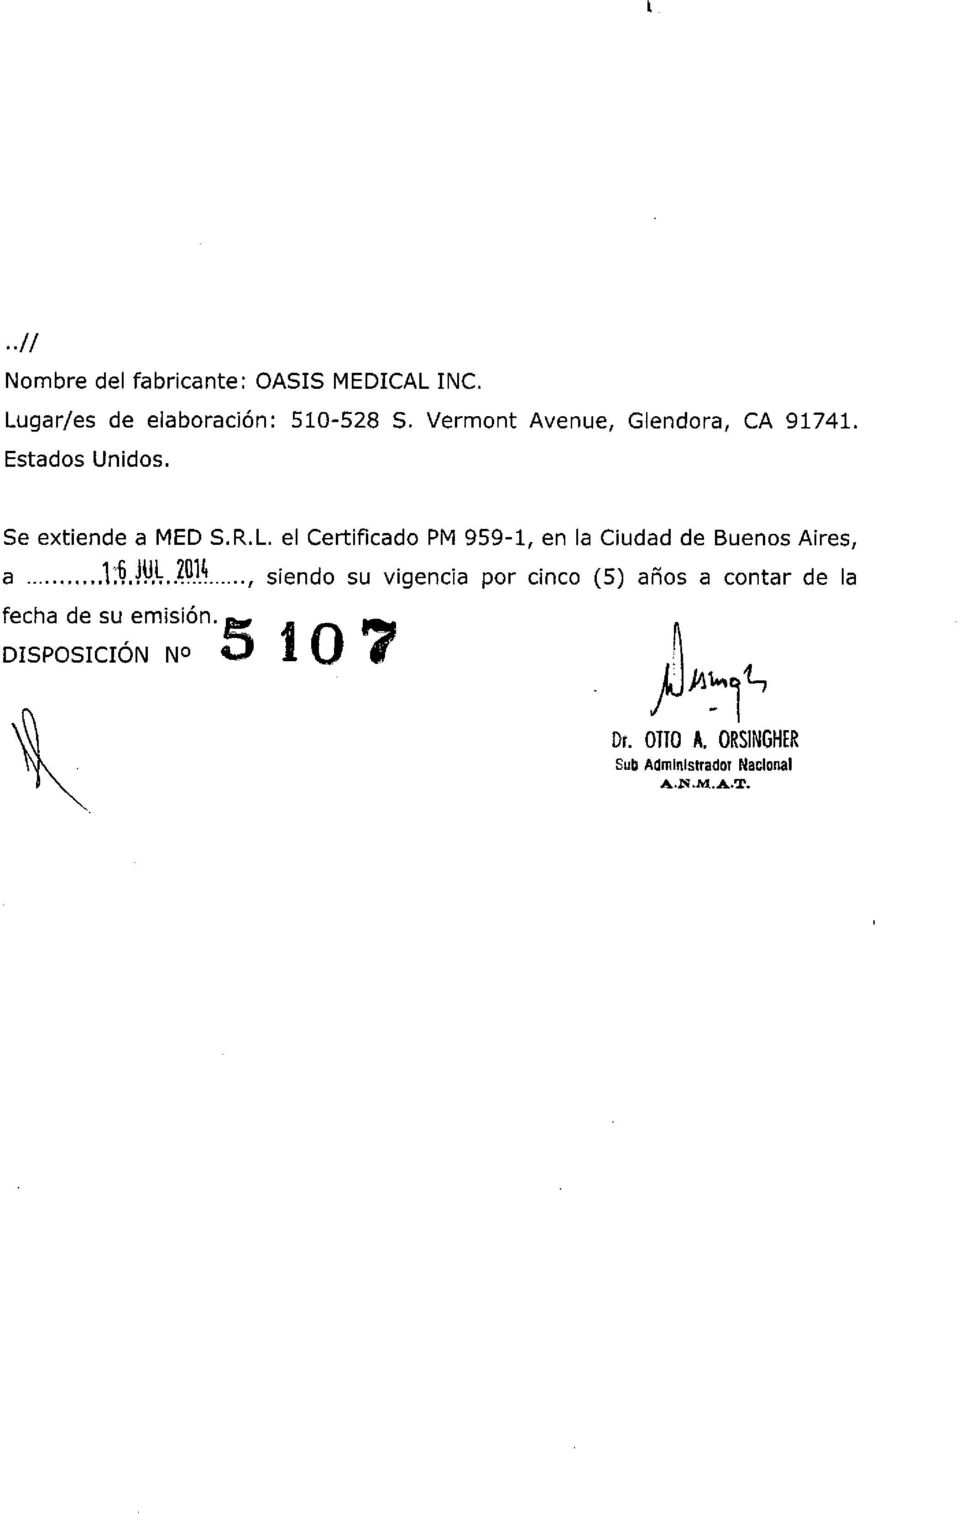 el Certificado PM 959-1, en la Ciudad de Buenos Aires, a.l:~.wl~o.1.l, siendo su vigencia por cinco (5) años a contar de la fecha de su,emisión.